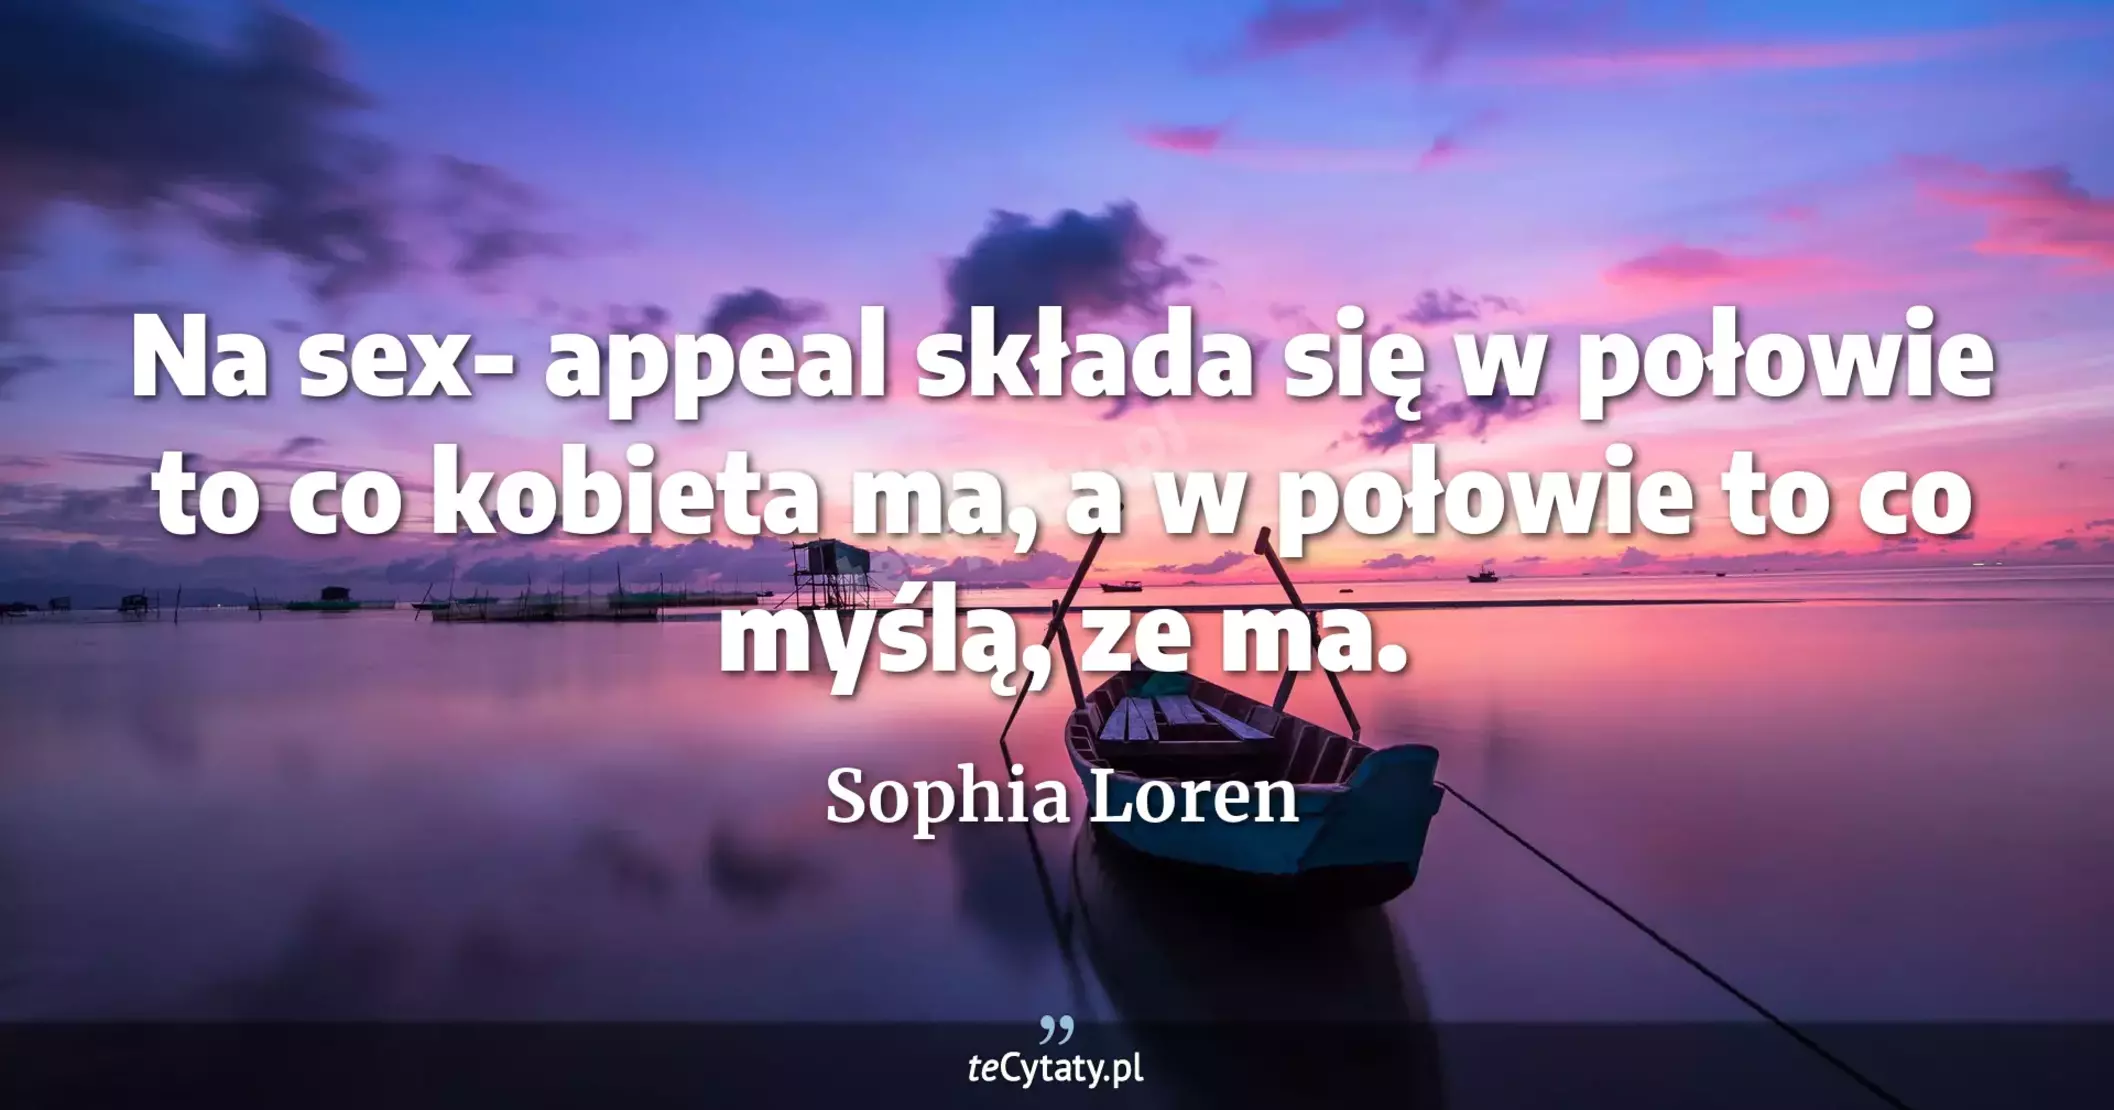 Na sex- appeal składa się w połowie to co kobieta ma, a w połowie to co myślą, ze ma. - Sophia Loren